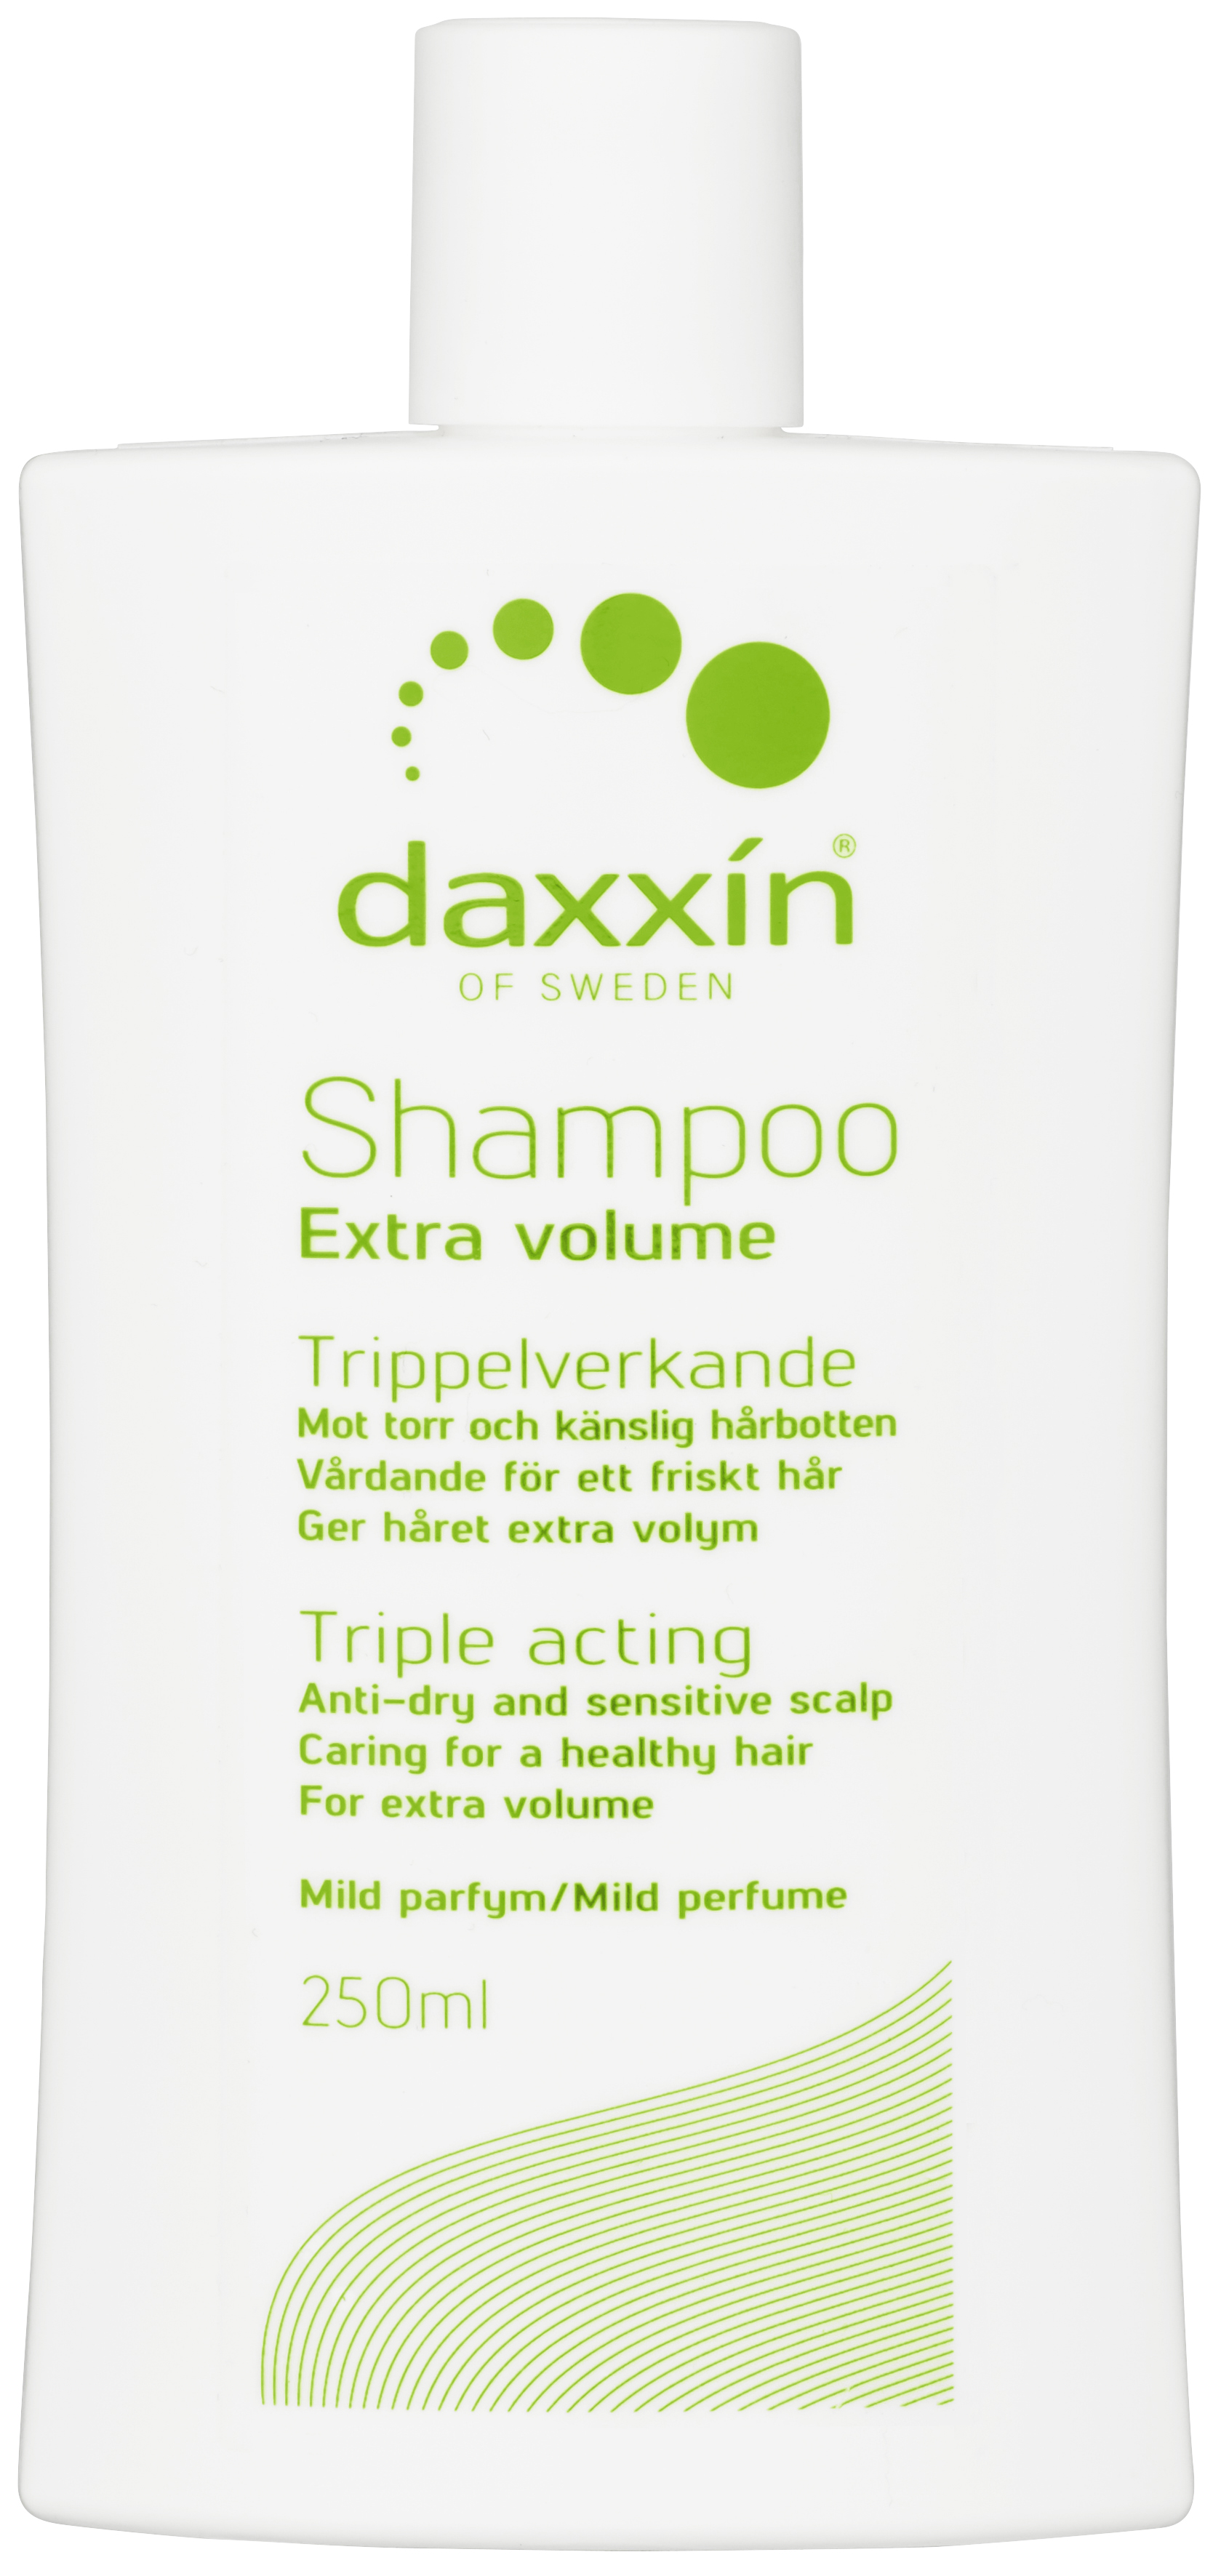 Daxxin Daxxin Shampoo Extra Volume, Flaske 250ml